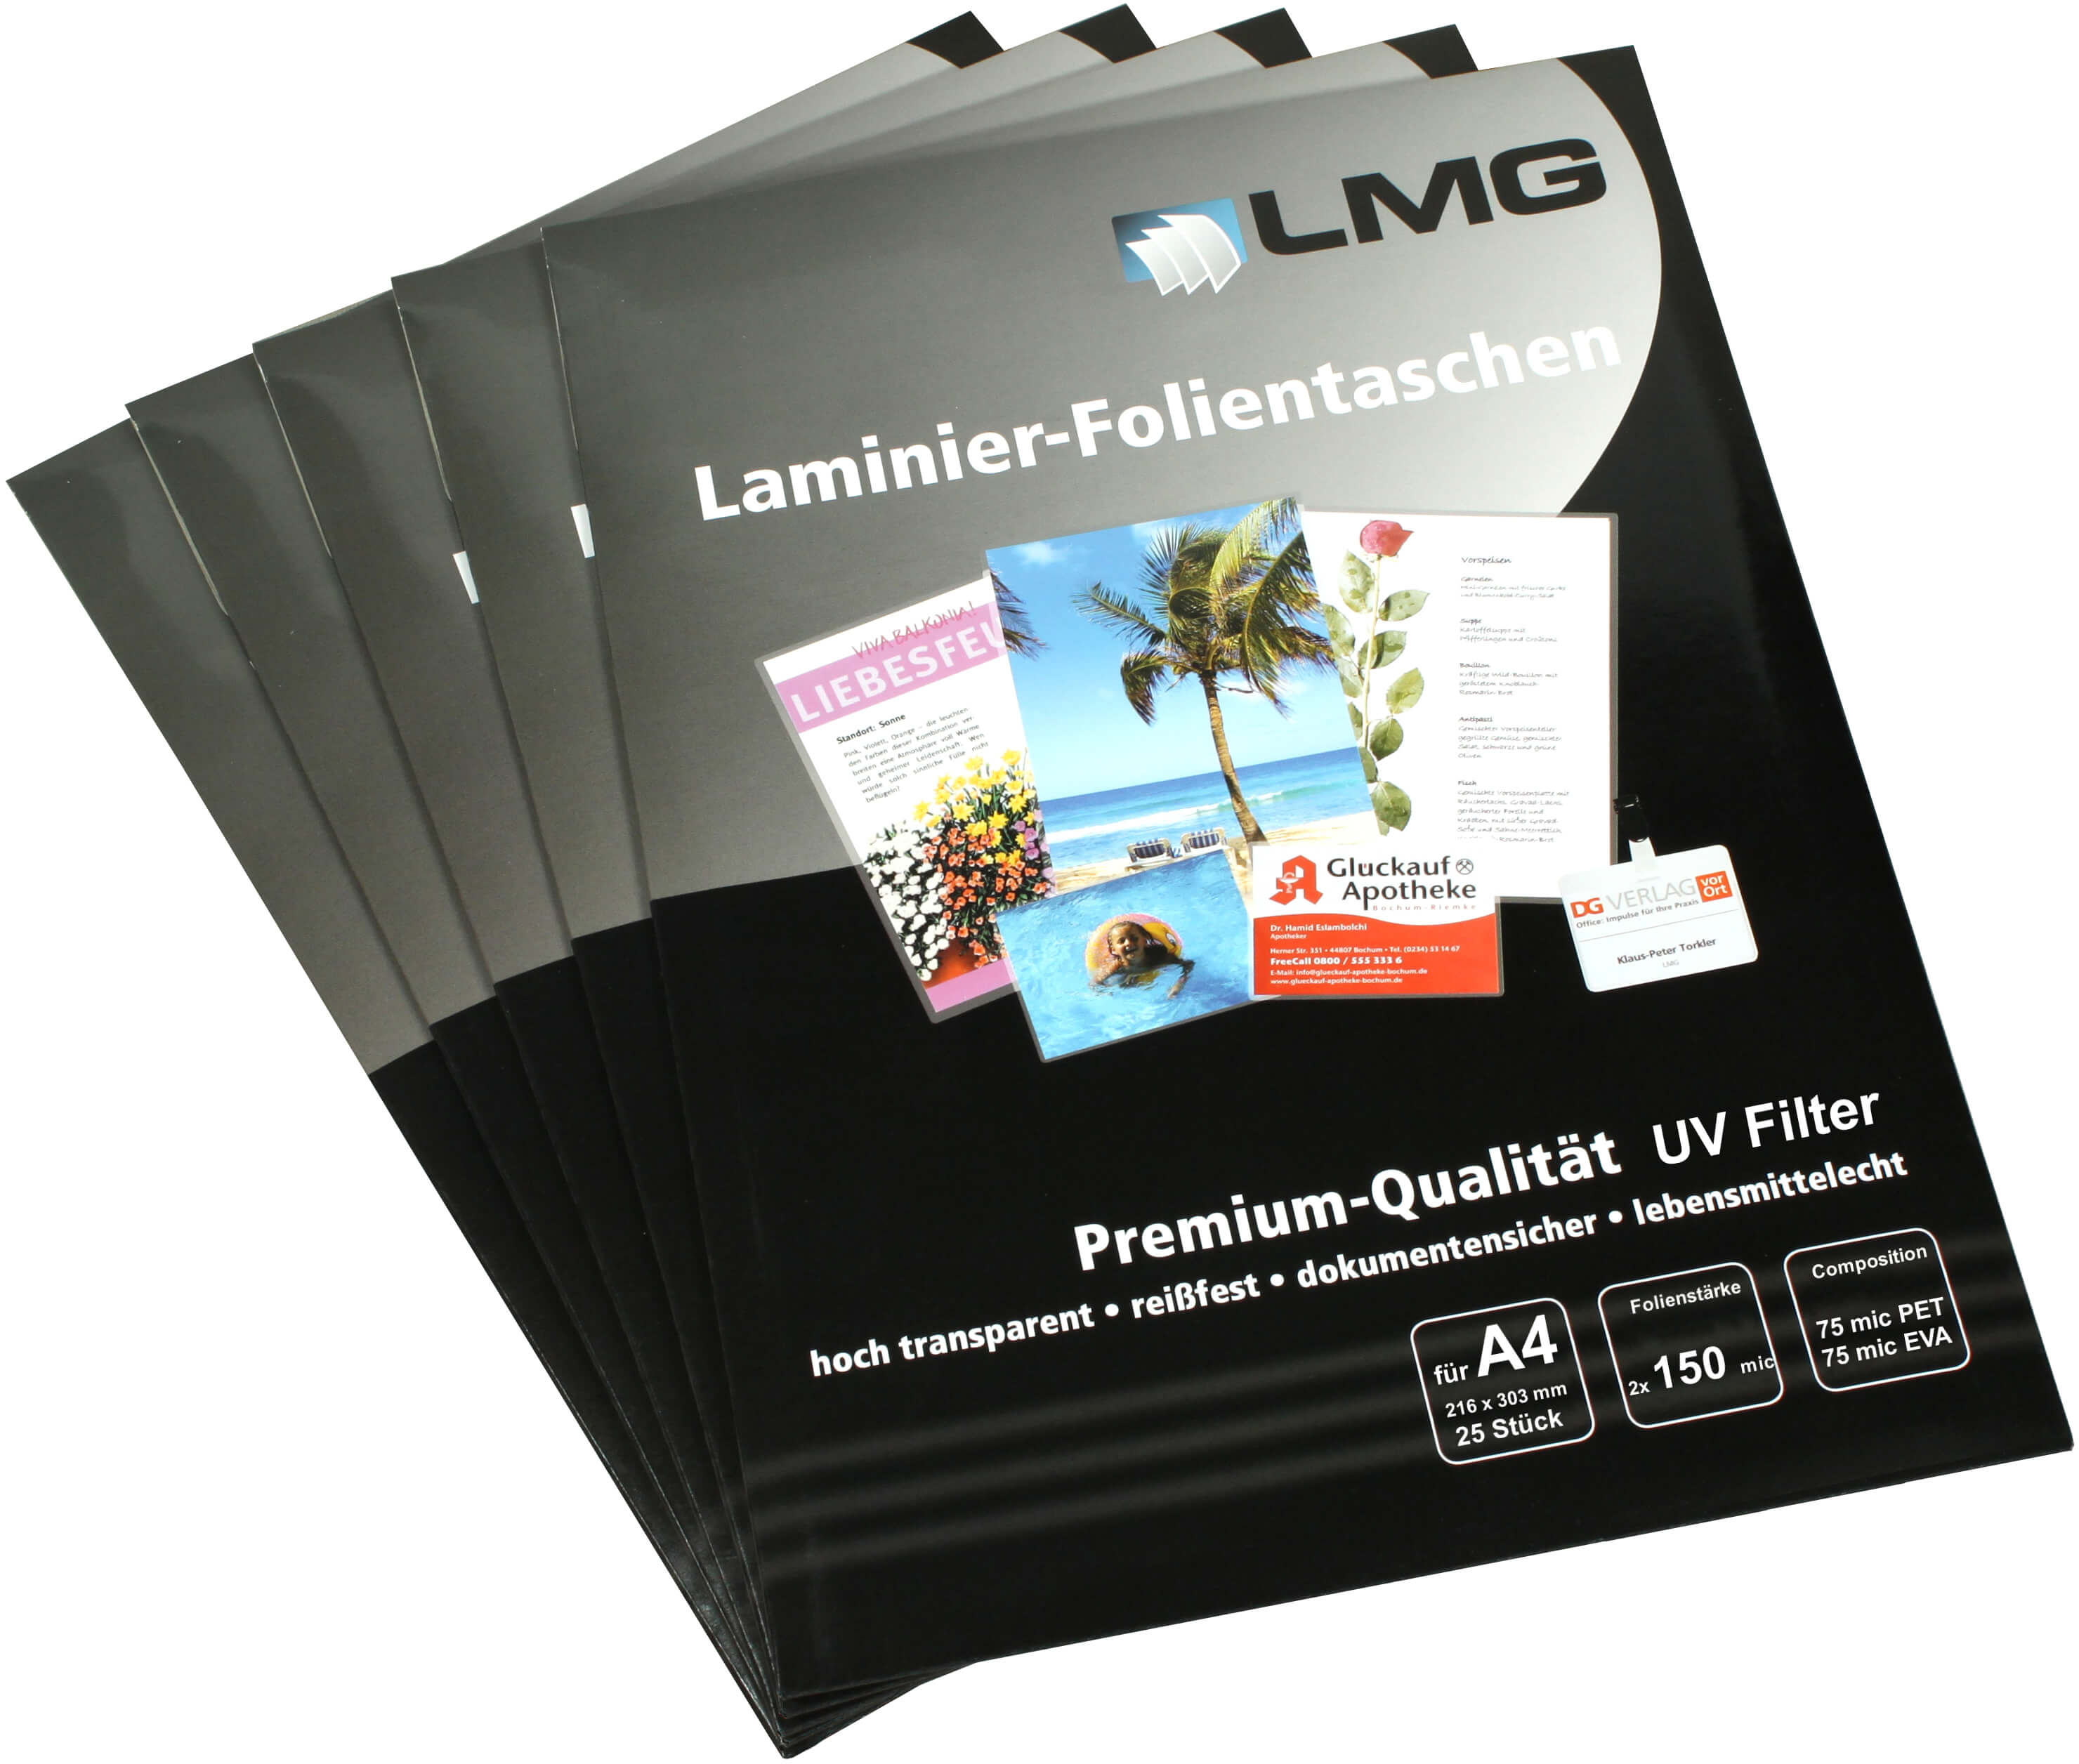 Laminierfolien A4 (216 x 303 mm) 150 mic mit UV Filter | Bestnr. LMGA4-150UV-25